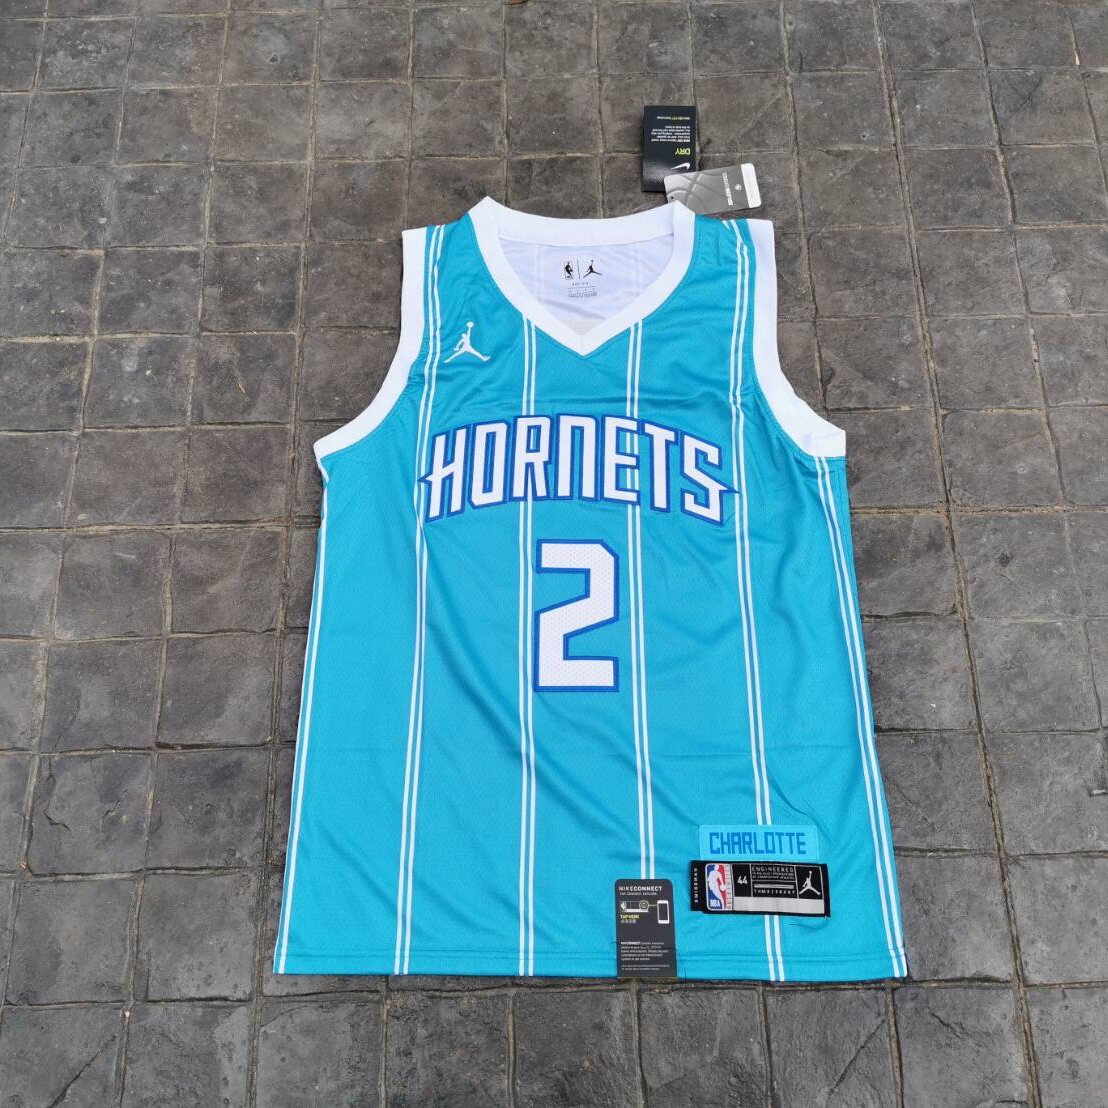 เสื้อบาสเกตบอล basketball jerseys(พร้อมจัดส่ง)#Hornets New city edition. 2 Ball.